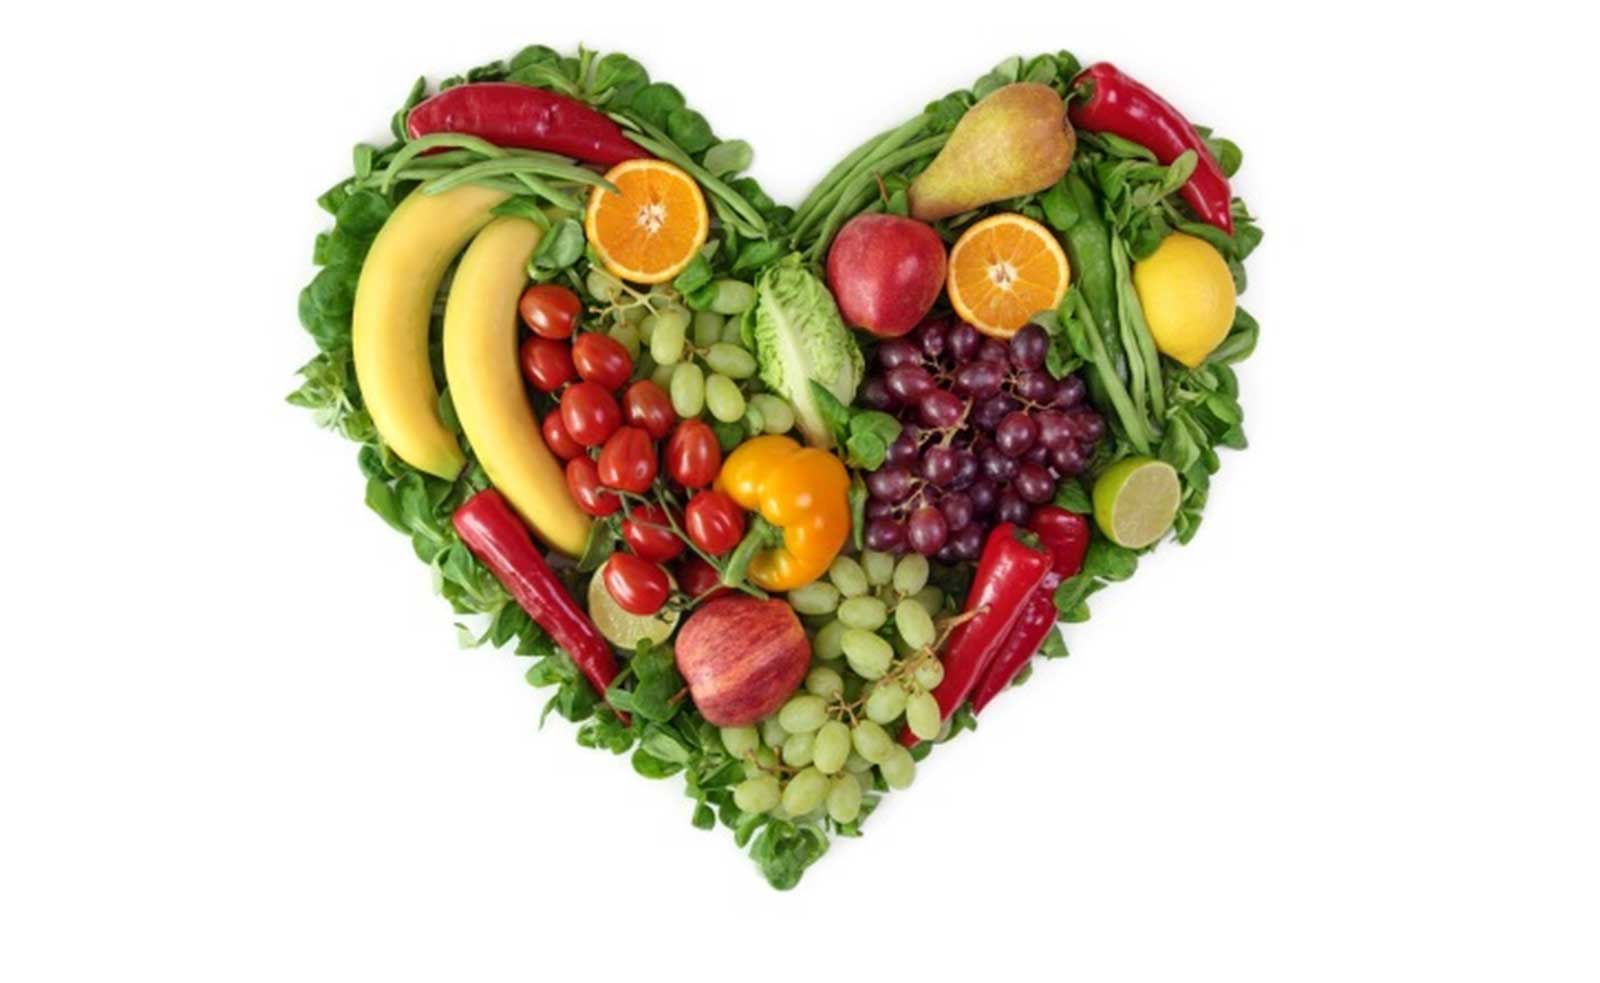 Vida saludable para el corazón - Tratar de mantener un peso saludable